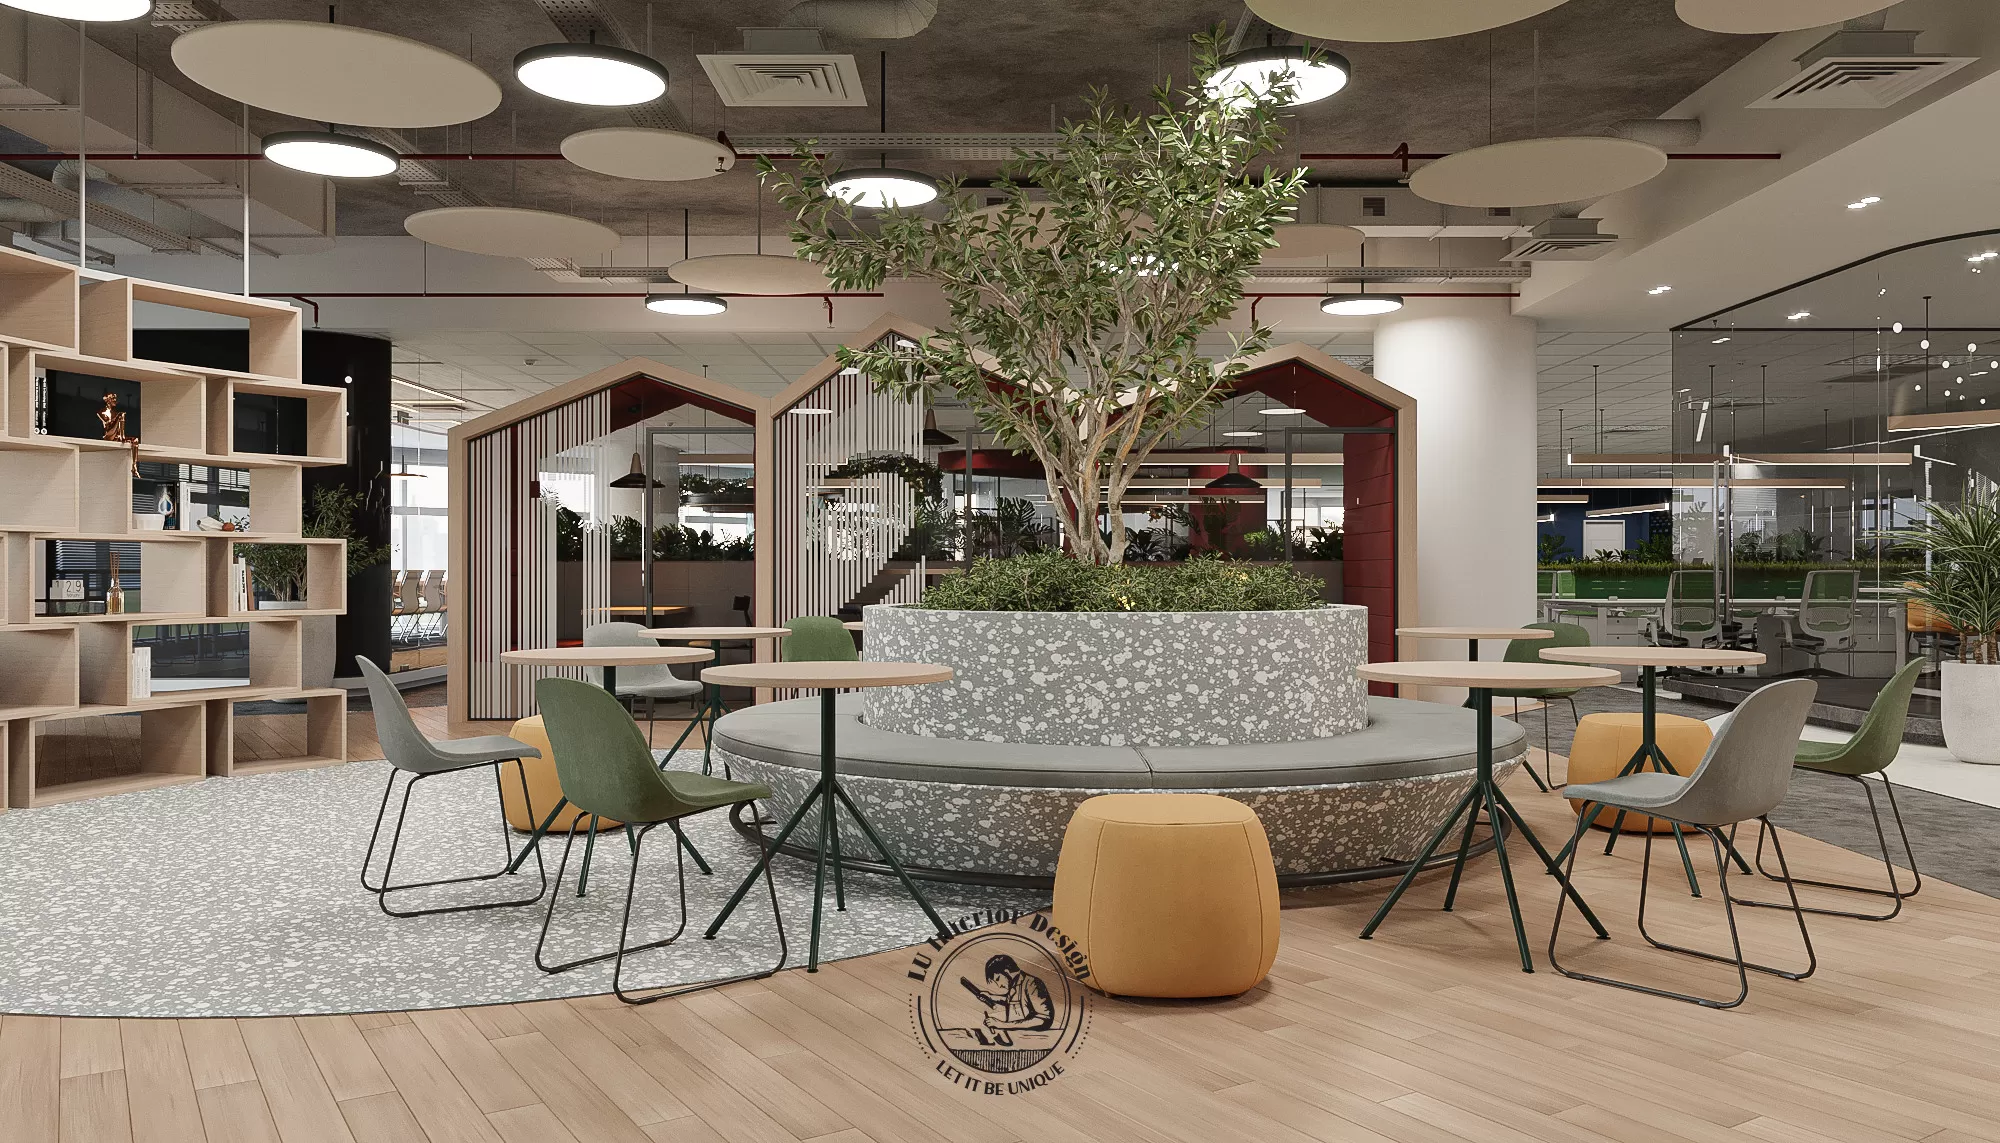 Thiết kế thi công nội thất văn phòng xanh làm tăng thẩm mỹ và giá trị văn hóa doanh nghiệp | LU Design thực hiện.